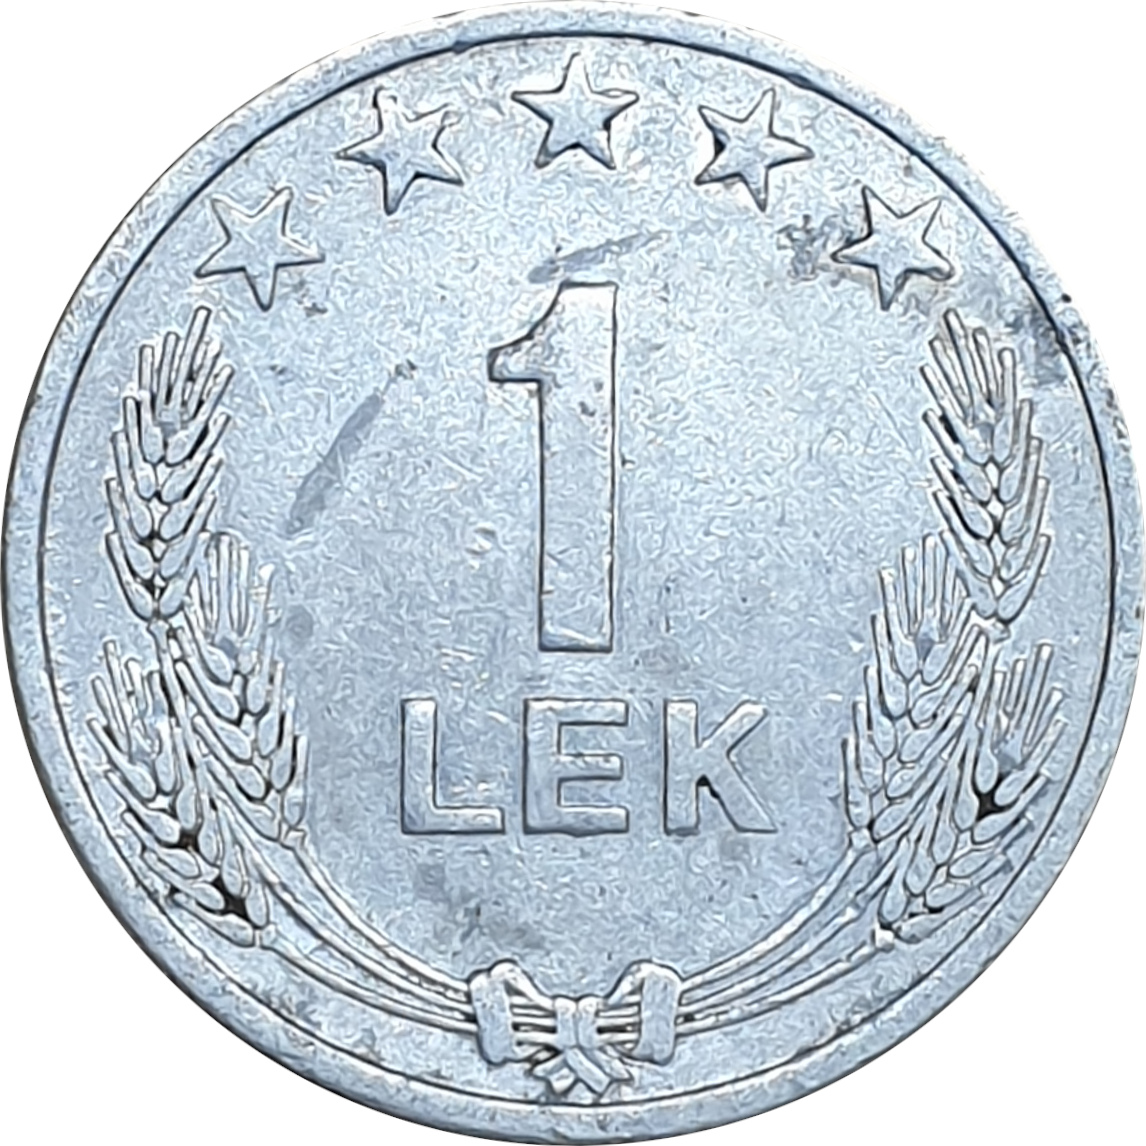 1 lek - Emblème - Type léger